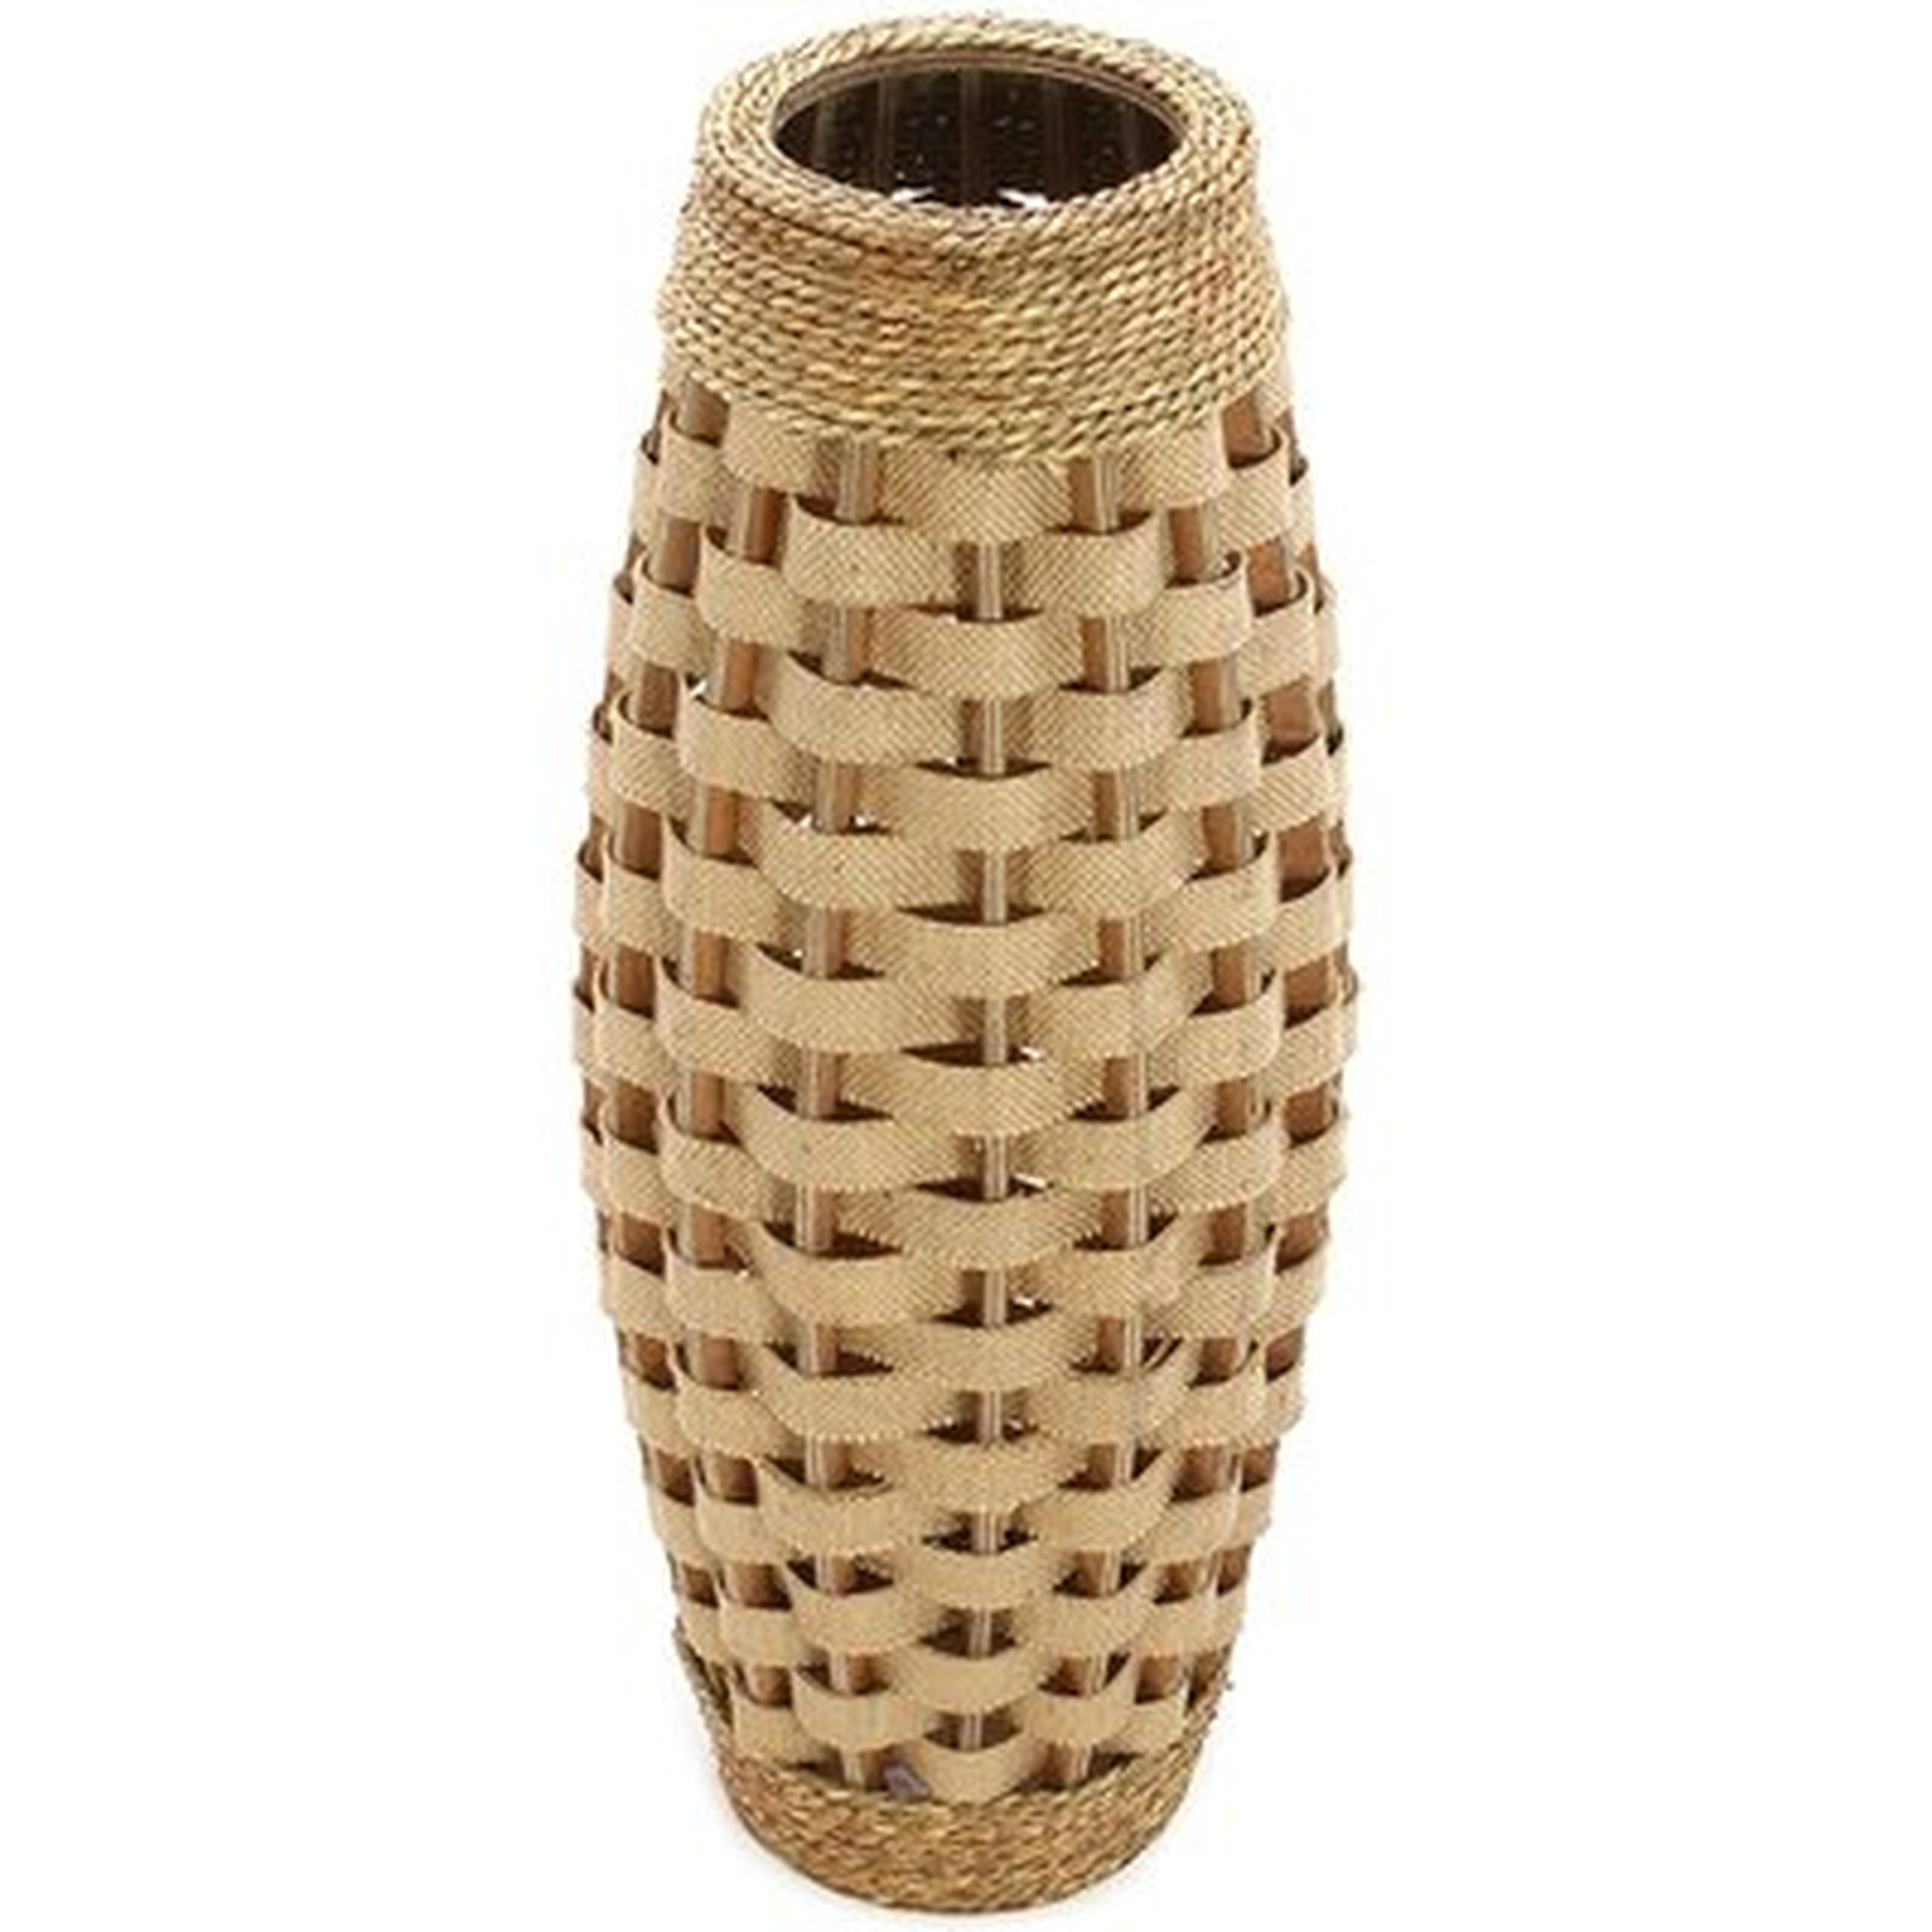 Sierra Brown 24.02" Manufactured Wood Floor Vase - Wayfair